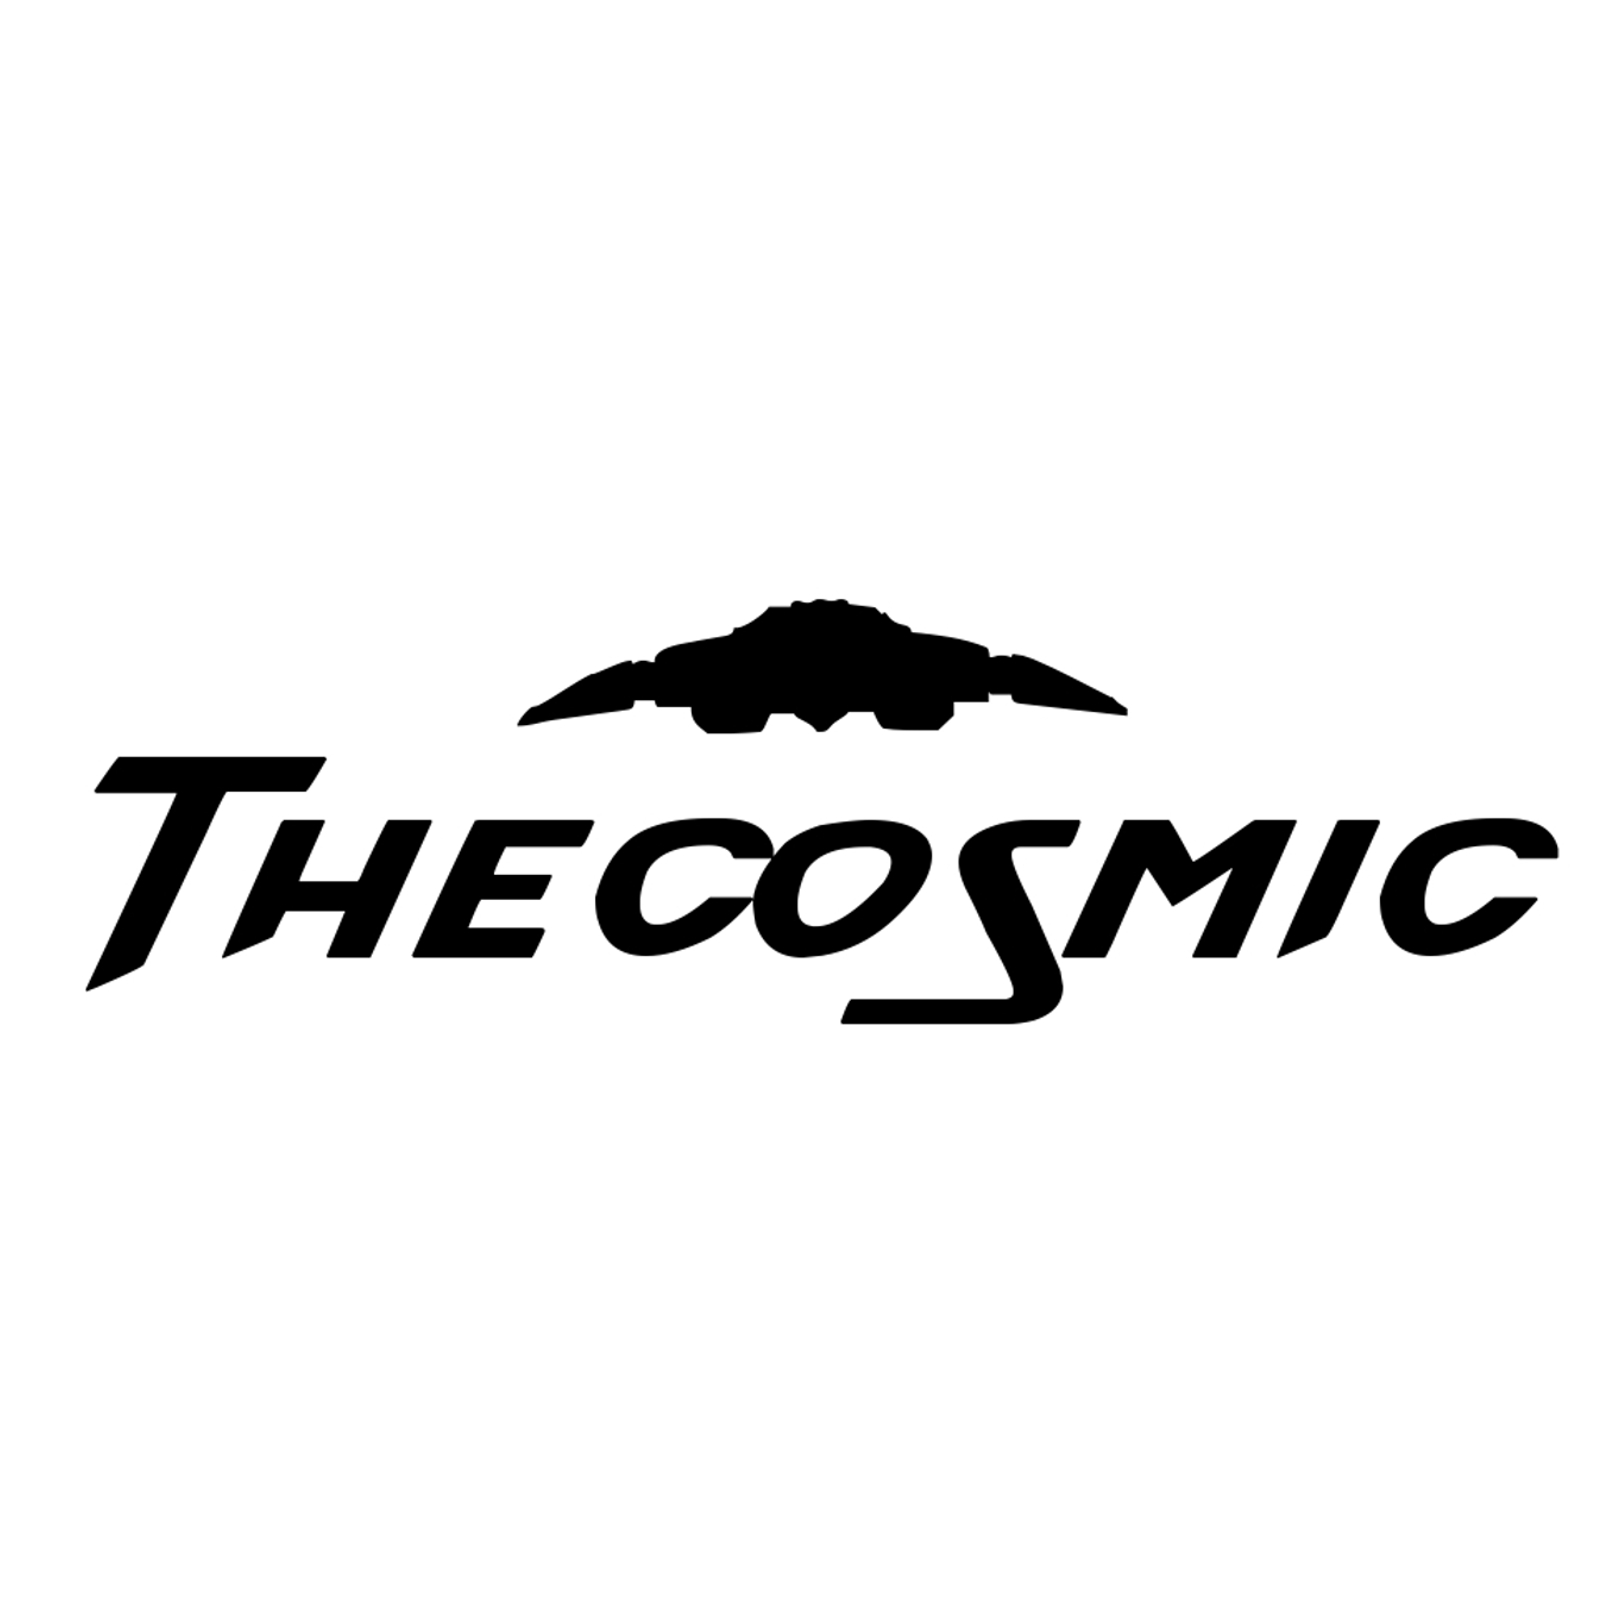 the_cosmic